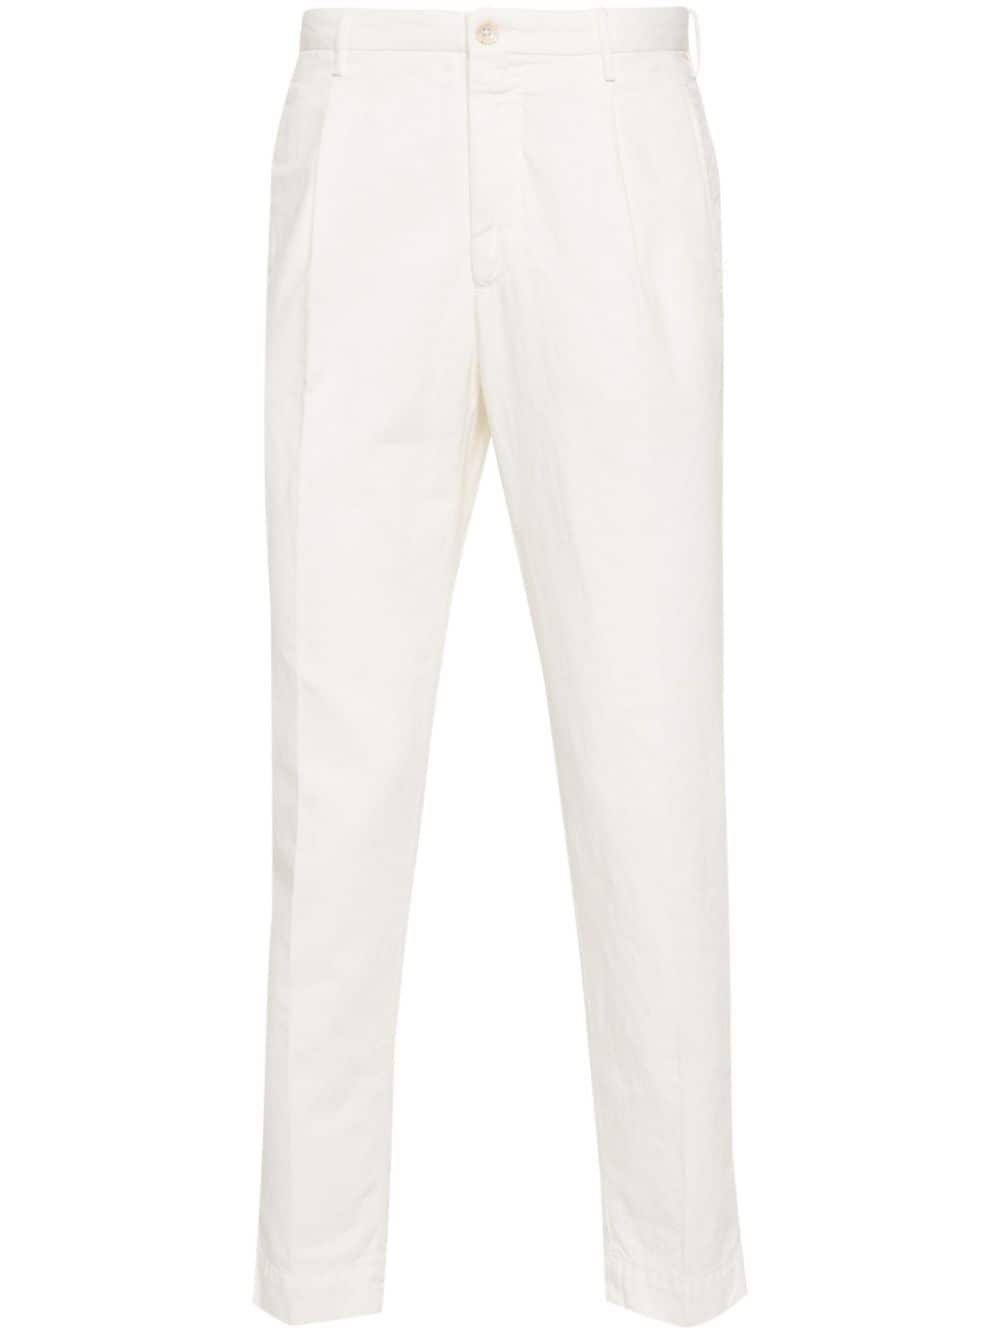 Incotex tailored tapered trousers - White von Incotex